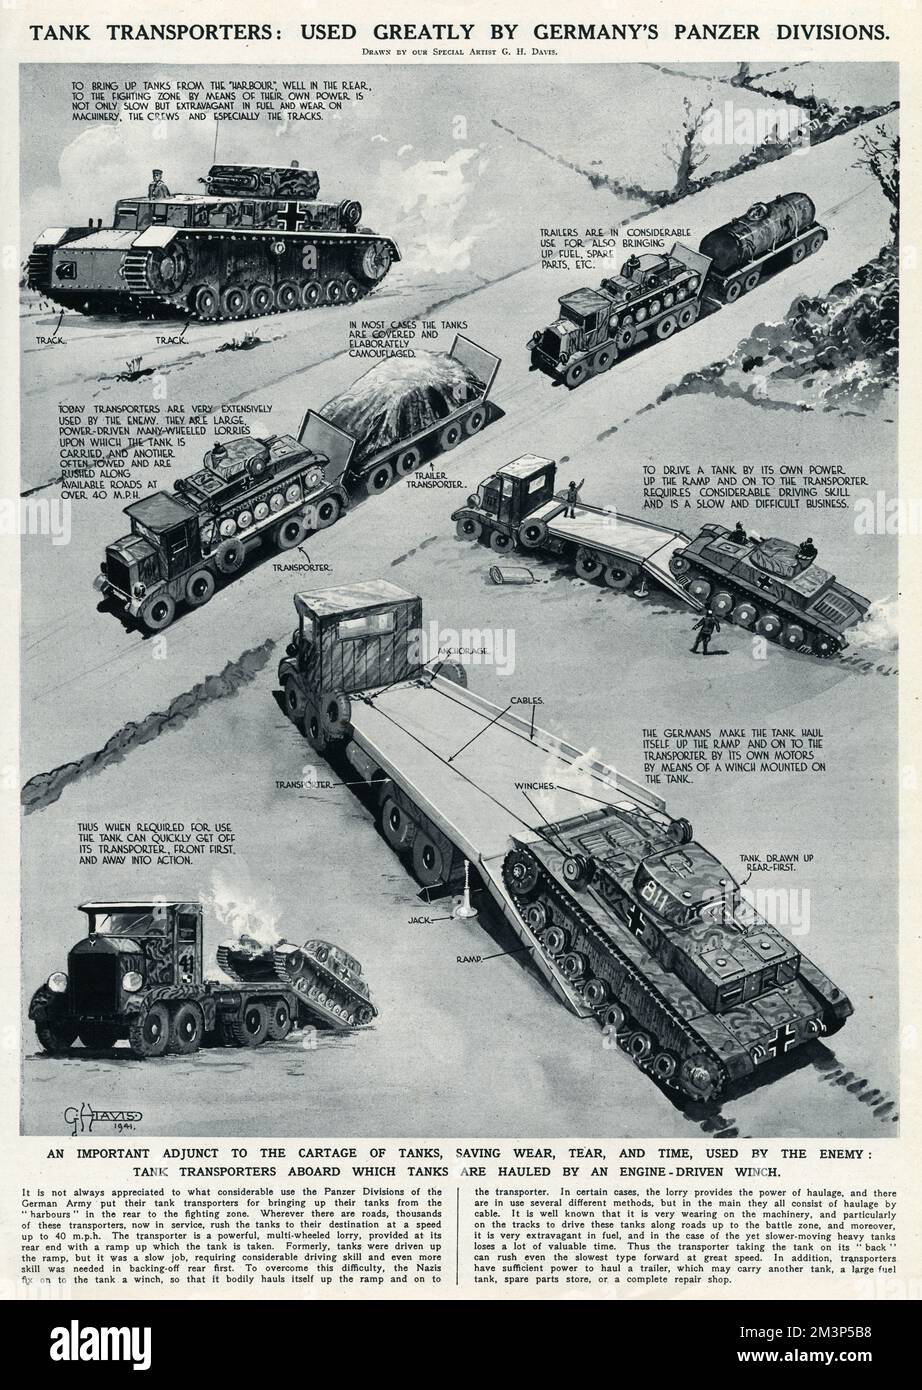 Panzertransporter: Im Zweiten Weltkrieg stark von den deutschen Panzerdivisionen genutzt. Eine wichtige Ergänzung zum Transport von Tanks, die Verschleiß, Verschleiß und Zeit spart. Die Tanks werden mit einer motorgetriebenen Winde an Bord des Transporters gezogen. Datum: 1941 Stockfoto